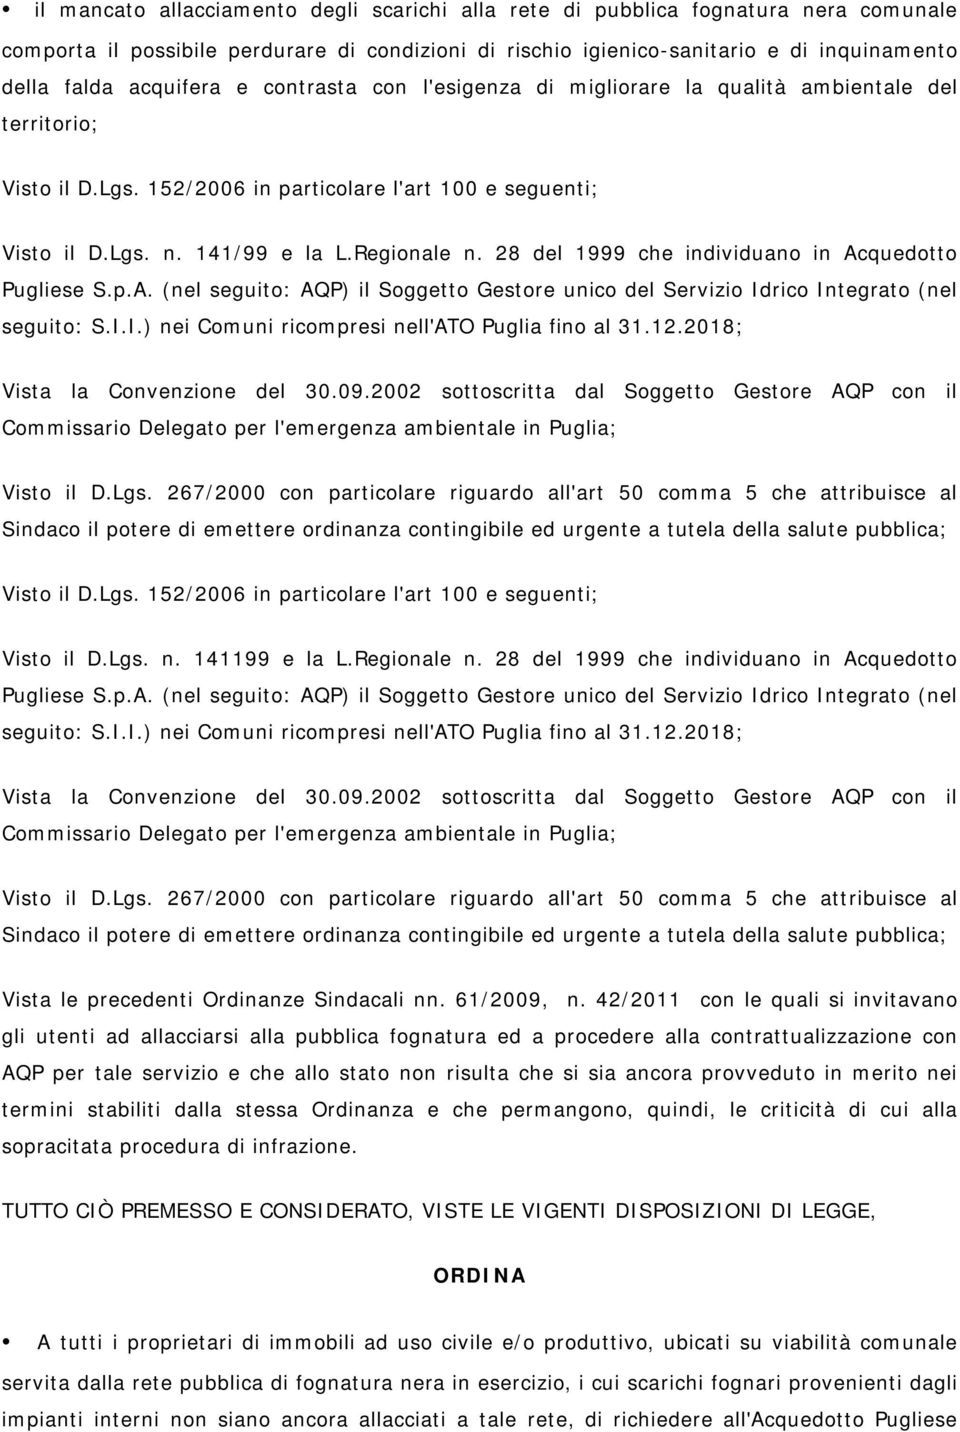 28 del 1999 che individuano in Acquedotto Pugliese S.p.A. (nel seguito: AQP) il Soggetto Gestore unico del Servizio Idrico Integrato (nel seguito: S.I.I.) nei Comuni ricompresi nell'ato Puglia fino al 31.